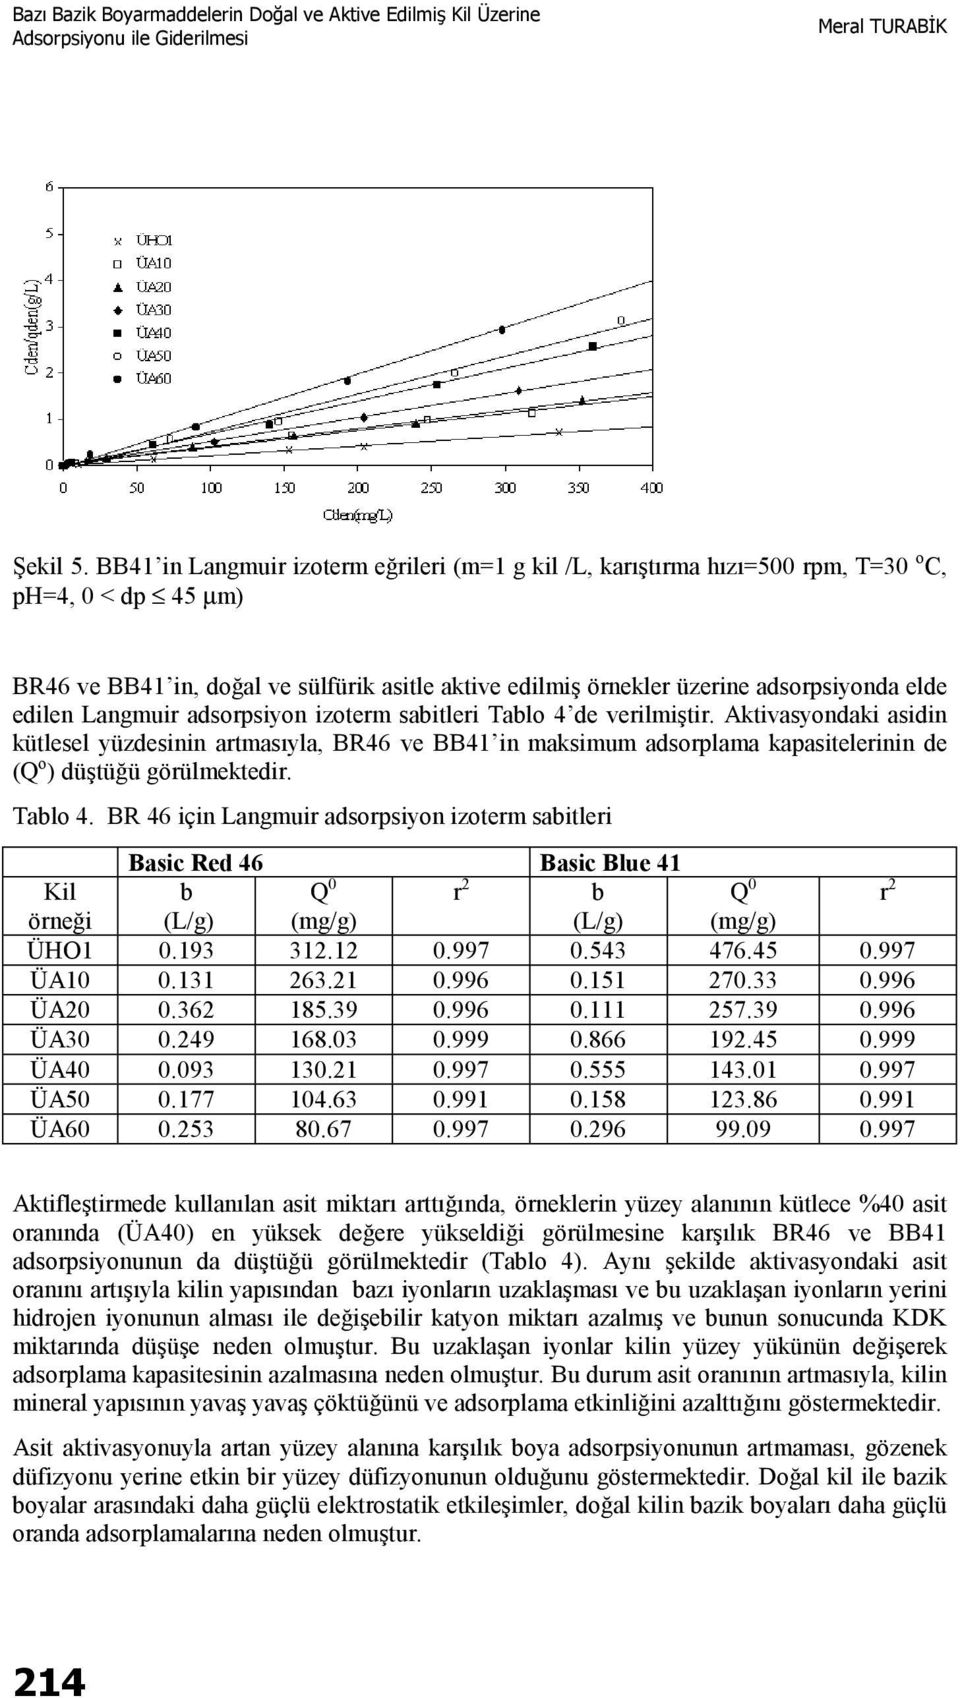 edilen Langmuir adsorpsiyon izoterm sabitleri Tablo 4 de verilmiştir.